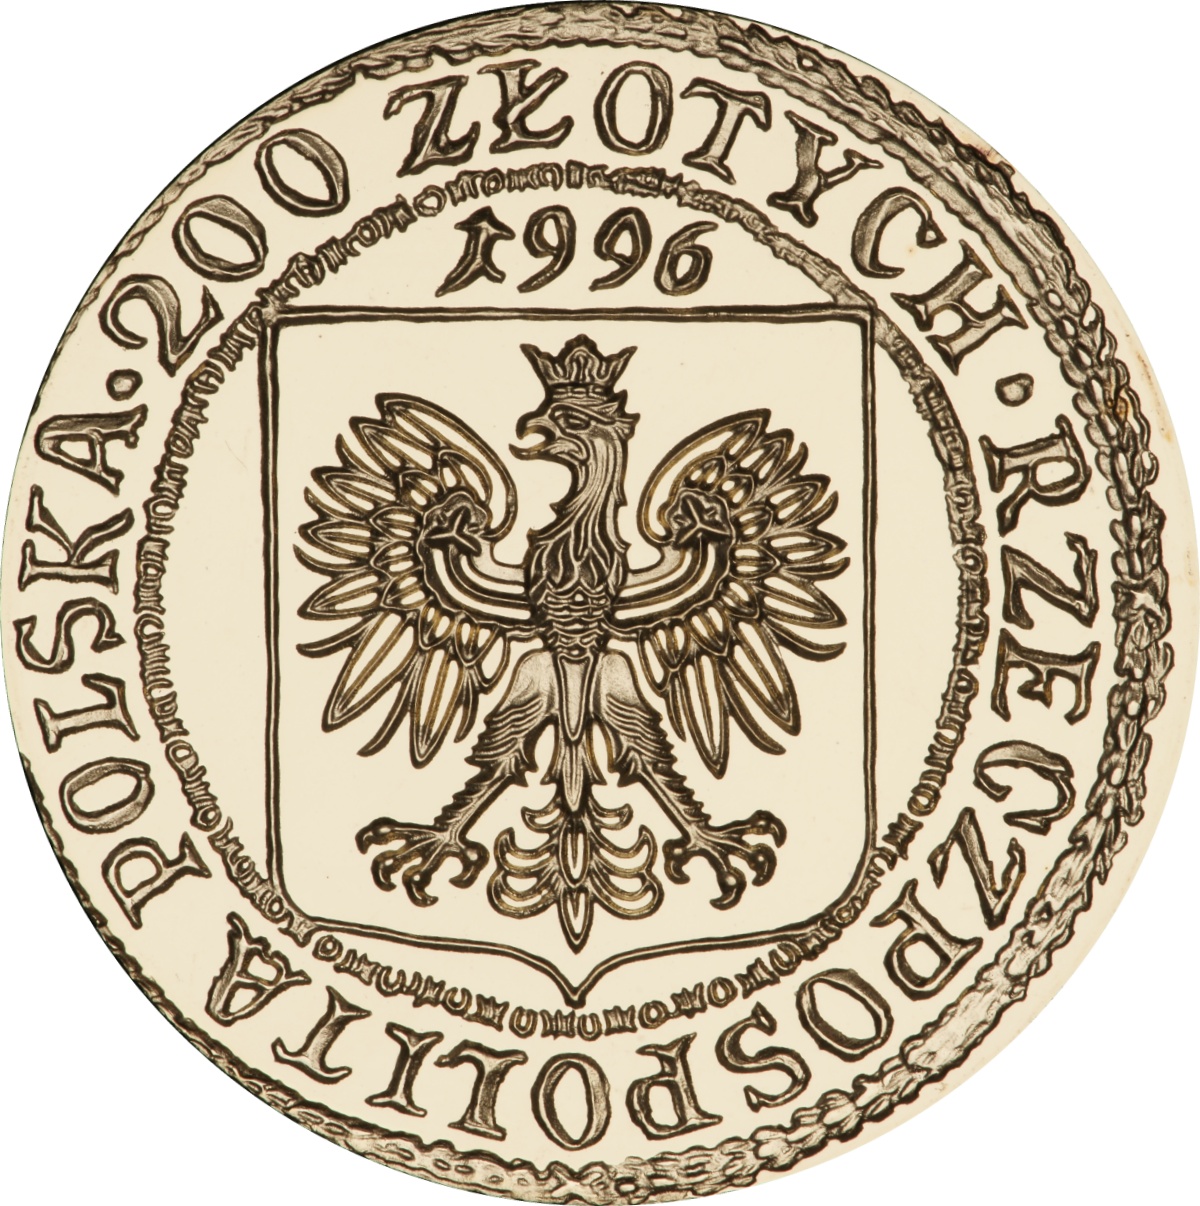 PL 200 Zloty 1996 monogram MW